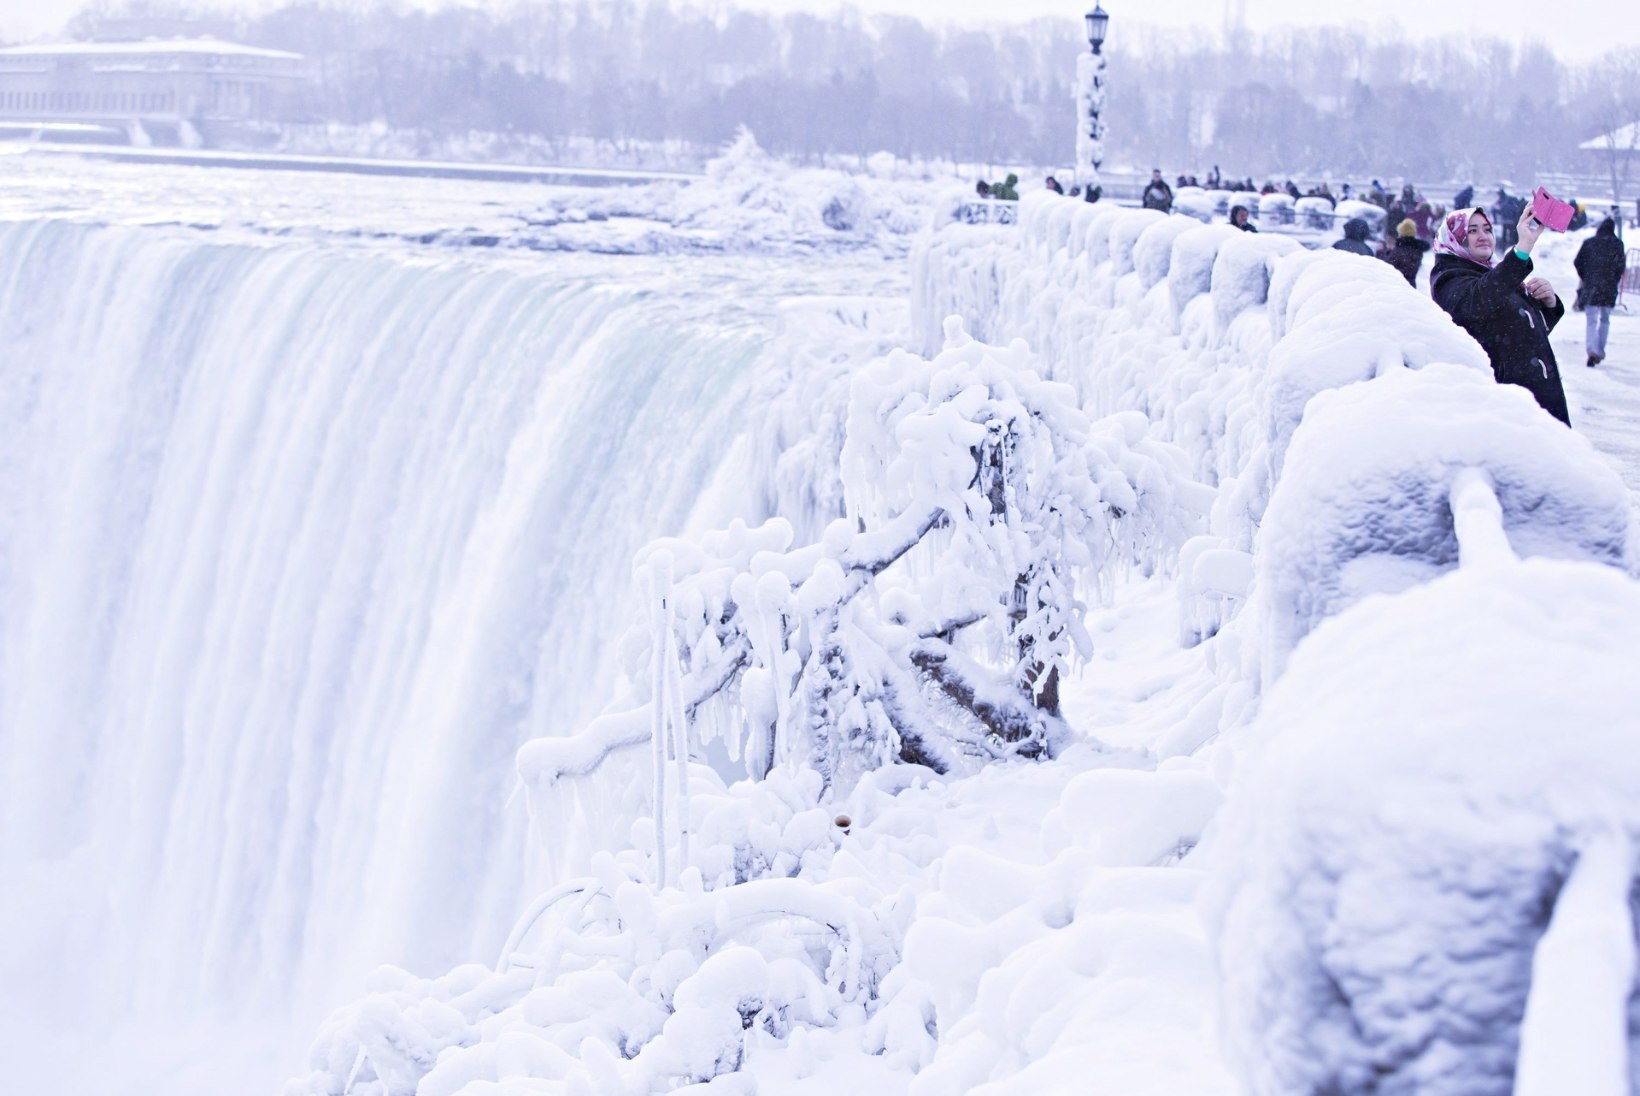 ERAKORDSED FOTOD | Pakane jäätas kuulsa Niagara joa 